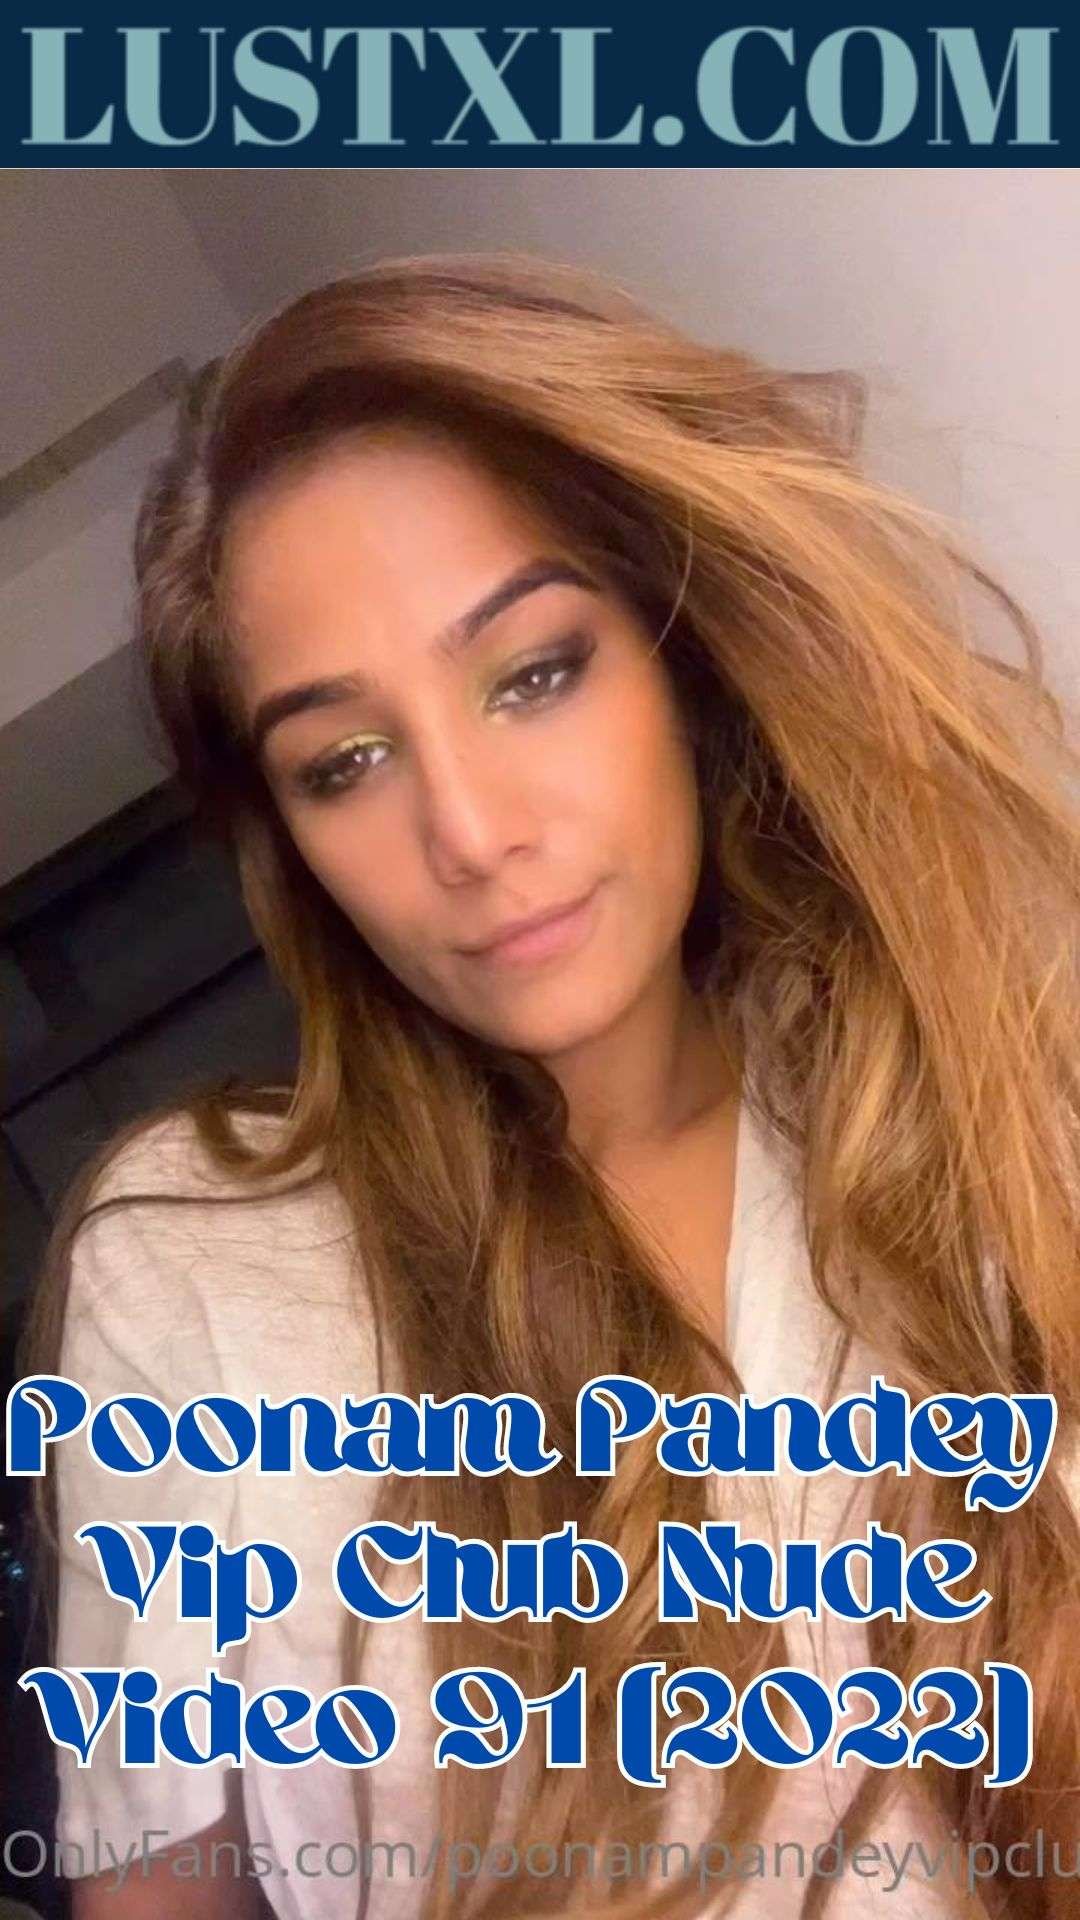 Poonam Pandey Vip Club Nude Video Lustxl